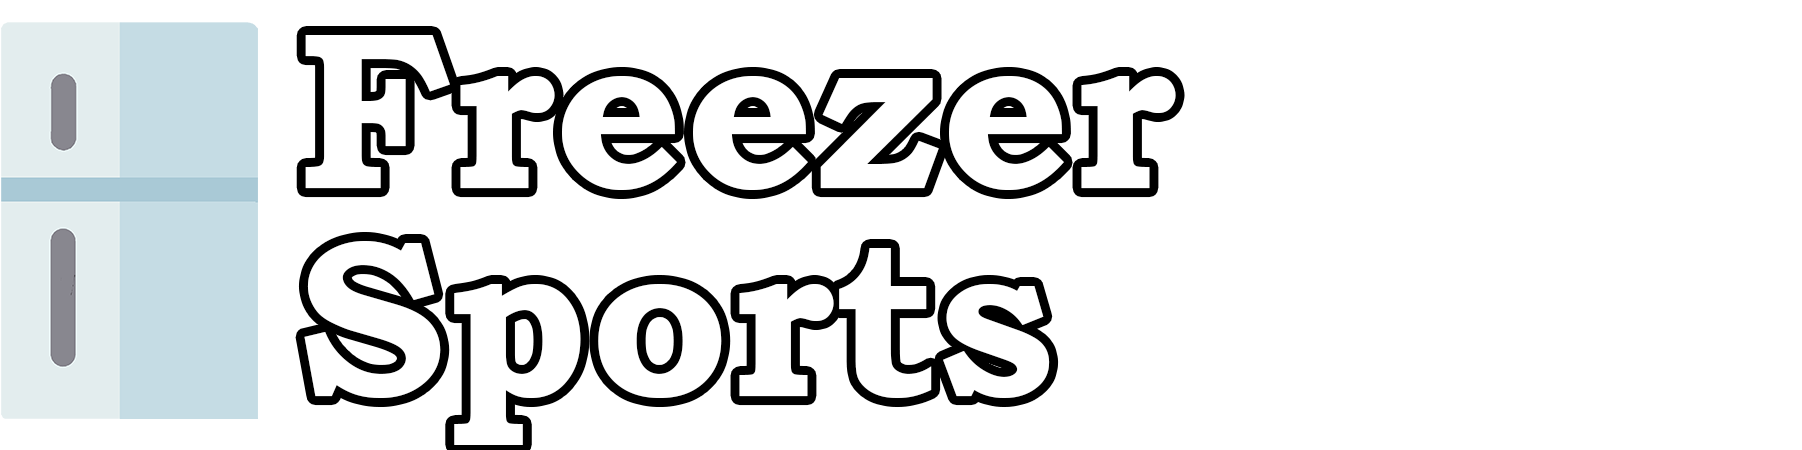 Freezer Sports